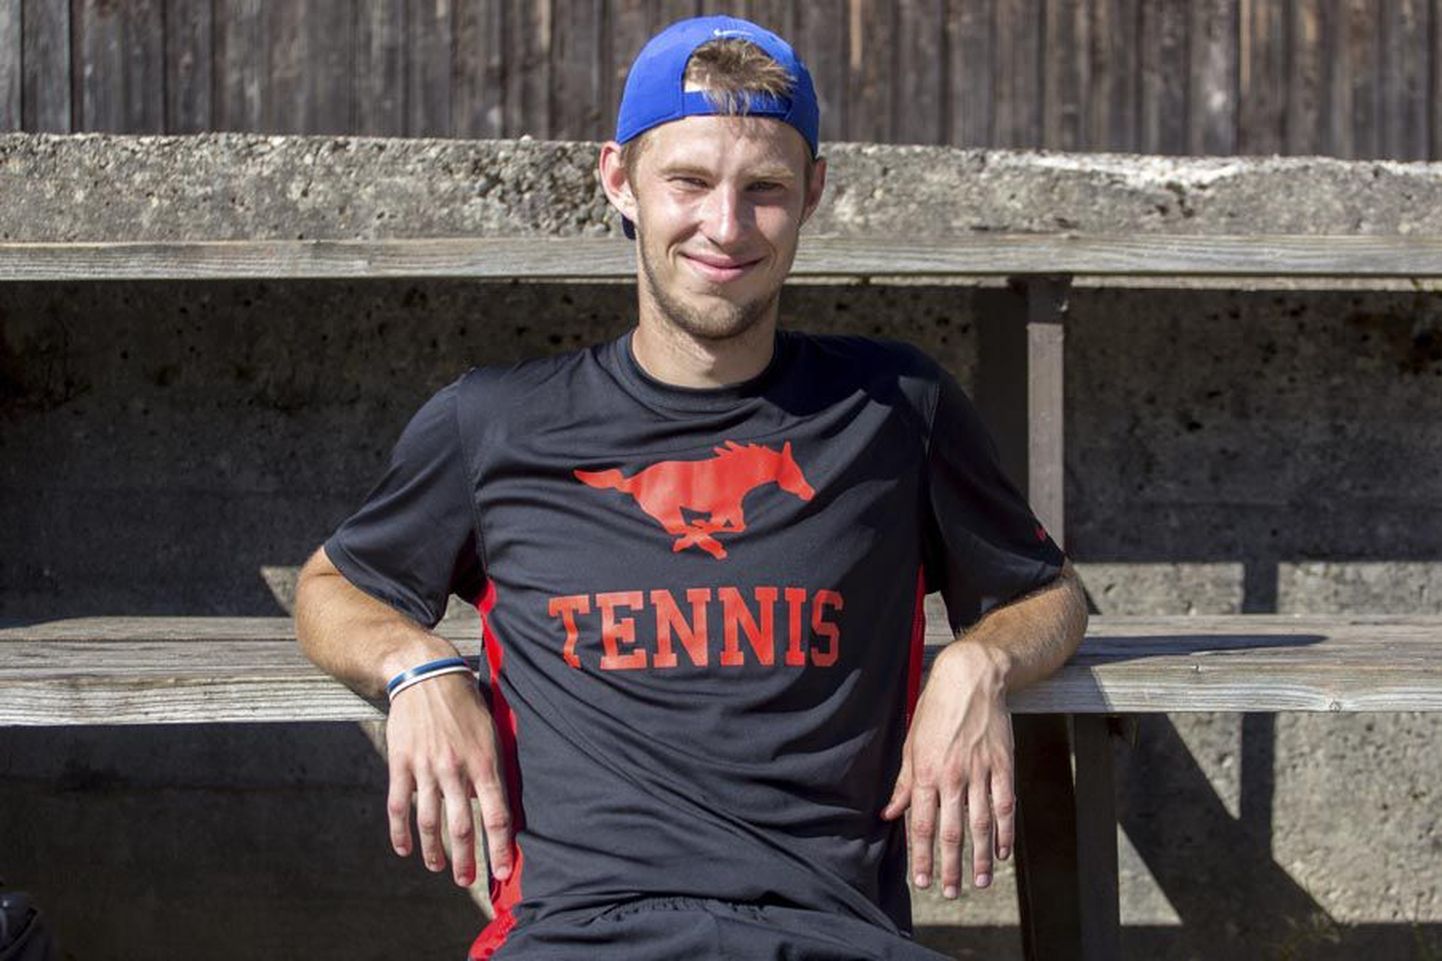 Kaks aastat Ameerika Ühendriikides ülikooli spordistipendiumi toel tennist mänginud ja õppinud Markus Kerner elas eelmisel nädalal oma kodustel väljakutel kaasa noorteturniiri mängudele. Tuleval nädalal sõidab ta taas ookeani taha, kus saab veel kaks aastat treenida ja õppida, et üritada siis profimängijana suures tennises tippu trügida.